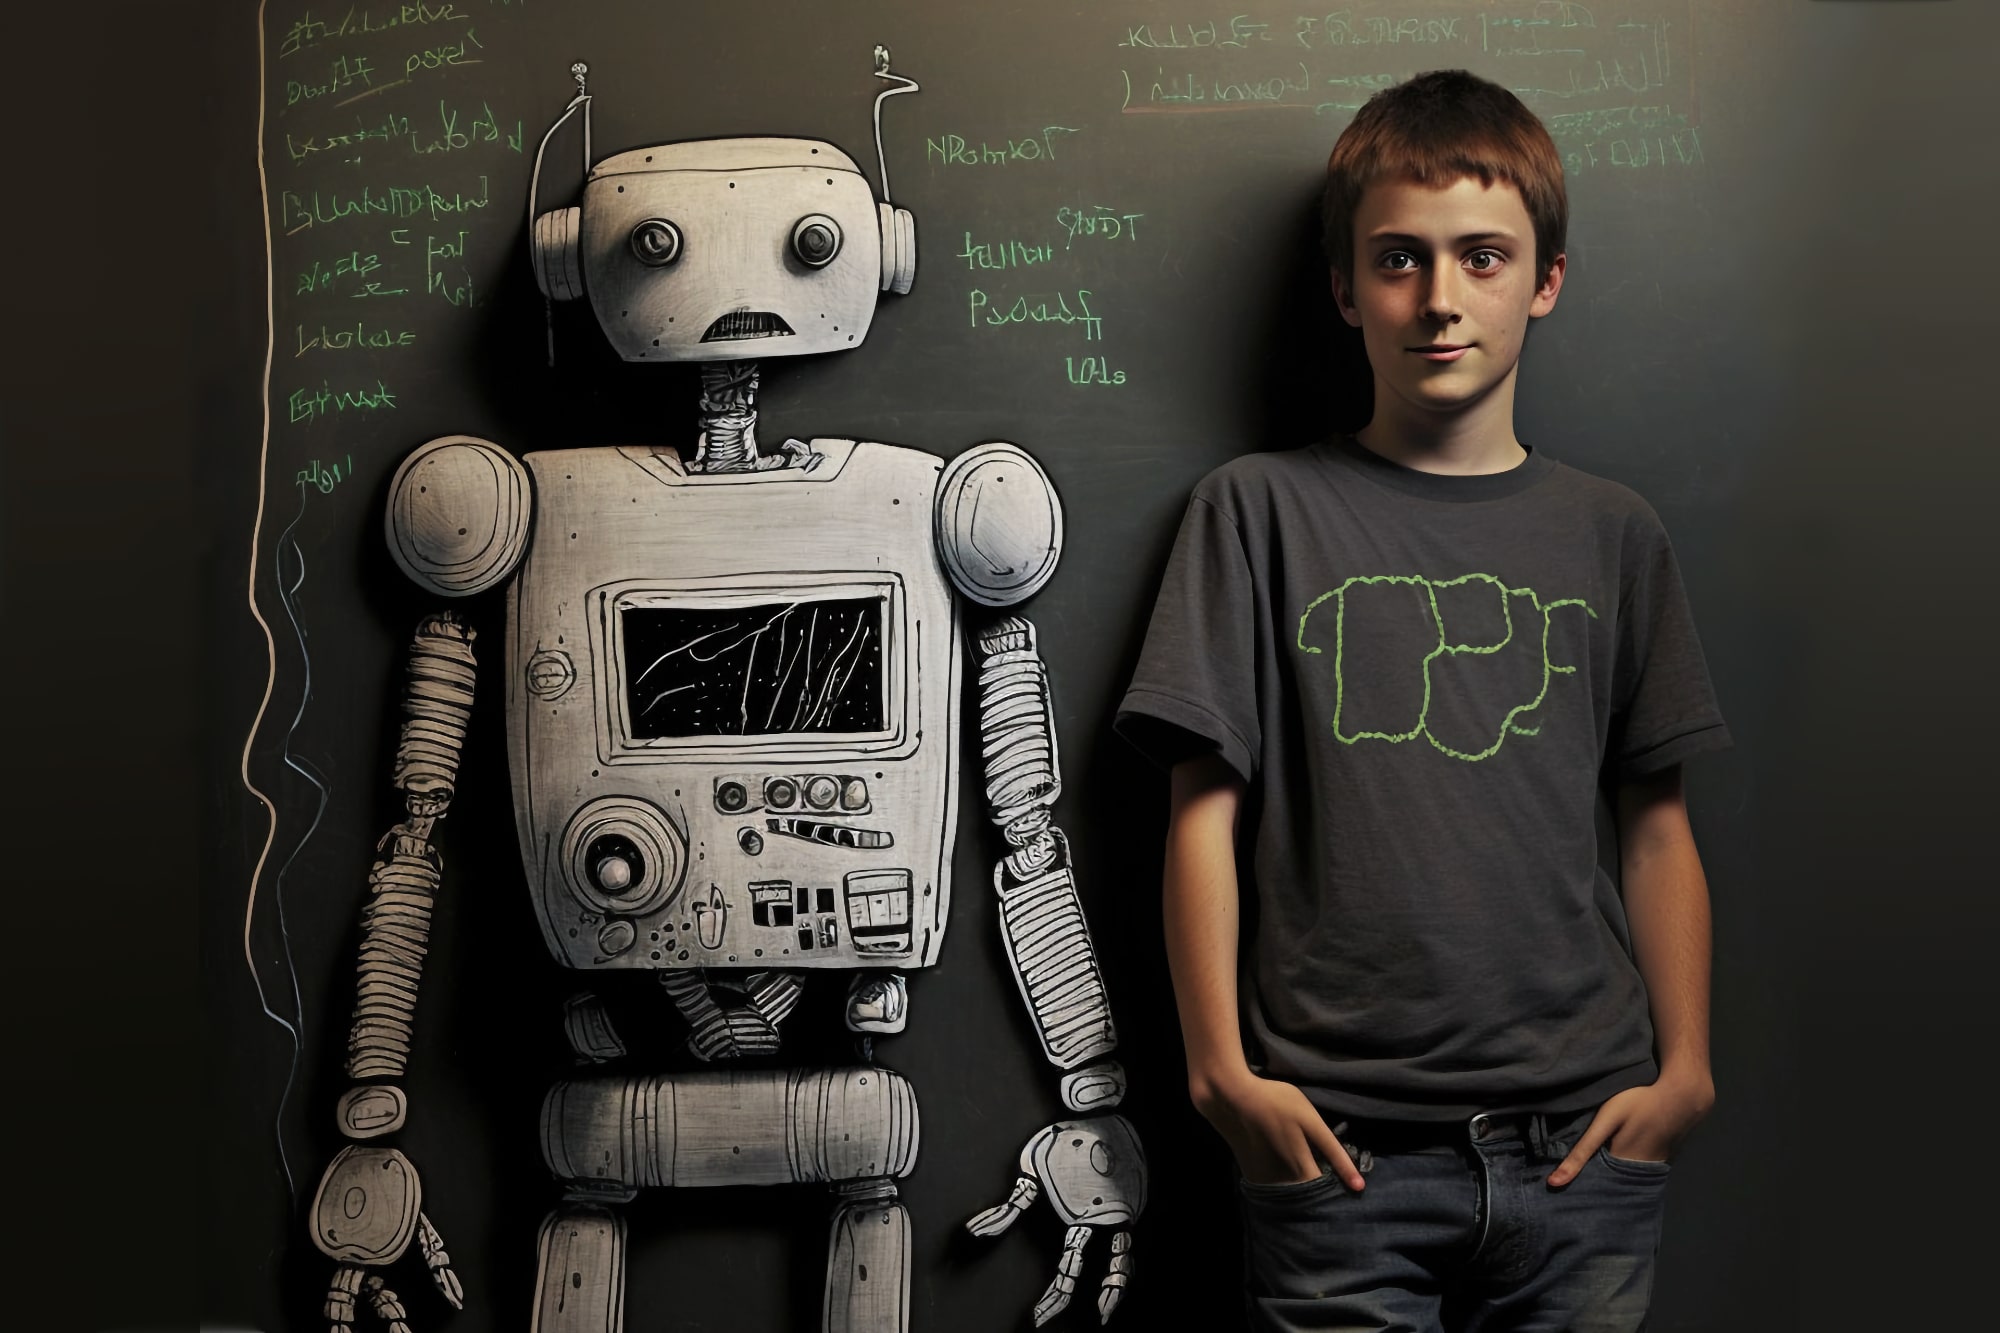 ارائه MidJourney یک دانش آموز و دوست روباتش در مقابل تخته سیاه.